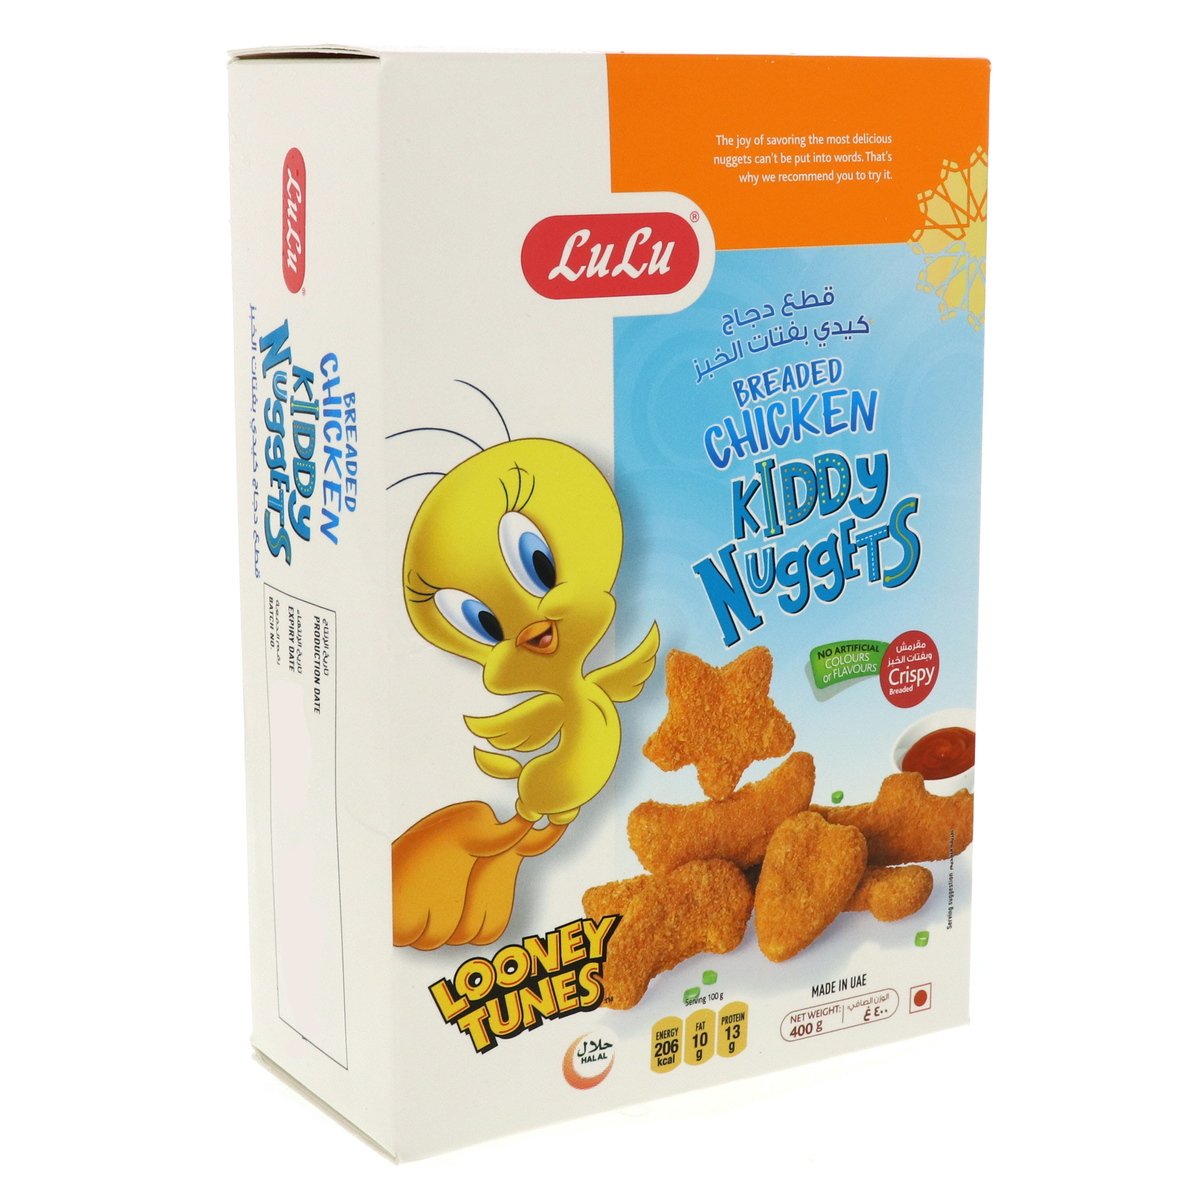 LuLu Breaded Chicken Kiddy Nuggets 400 g